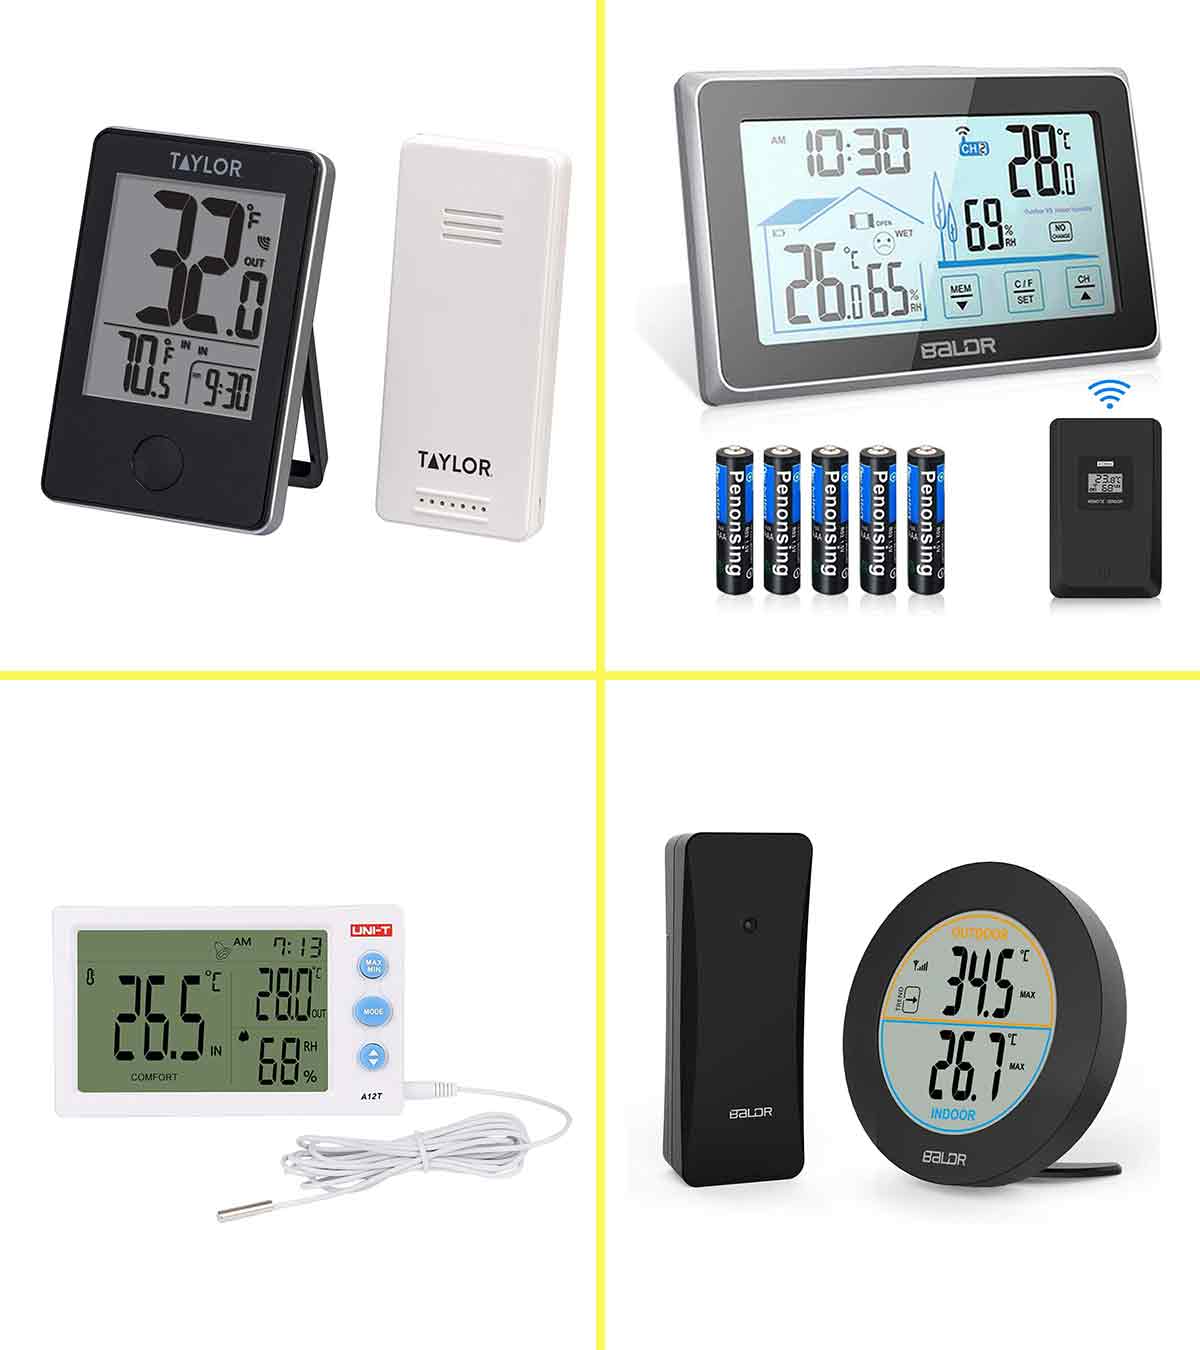 https://www.momjunction.com/wp-content/uploads/2020/04/15-Best-Indoor-Outdoor-Thermometers-In-2020-1.jpg